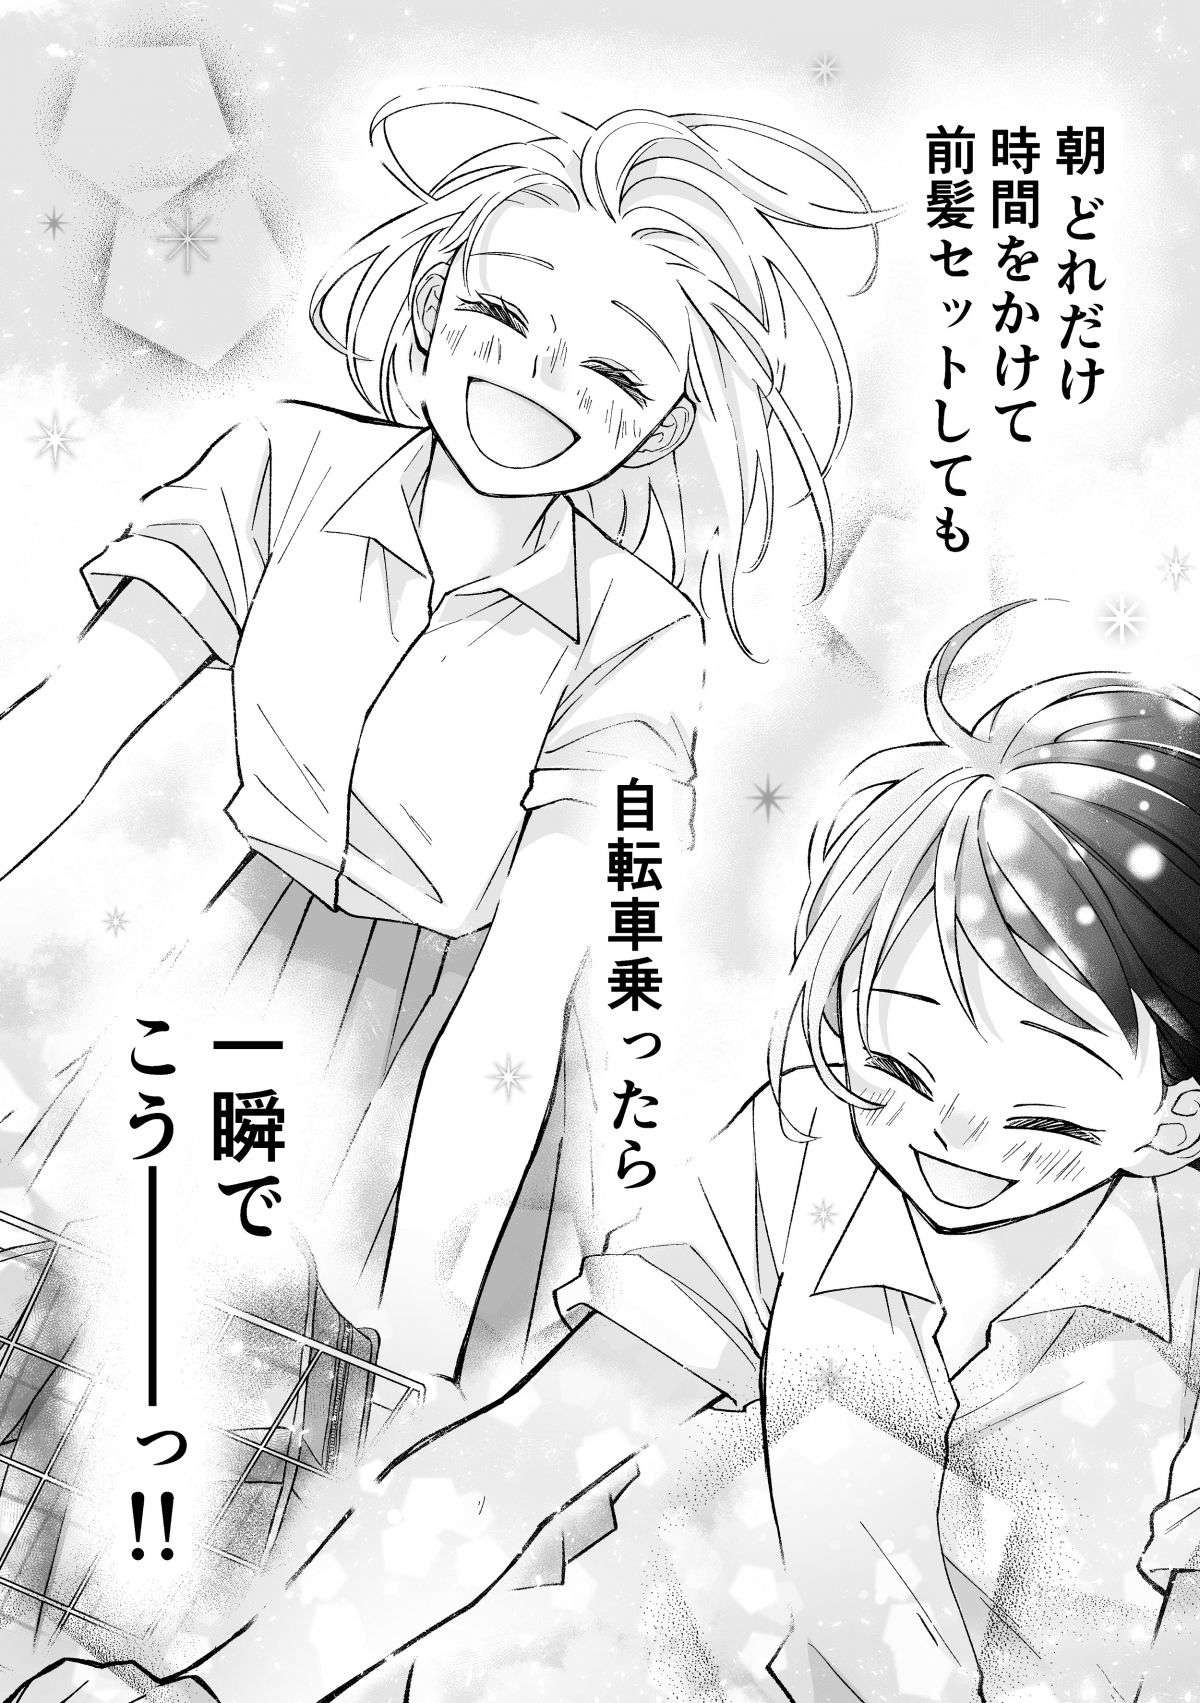 『少女漫画ぽく愚痴る。』 34.jpg